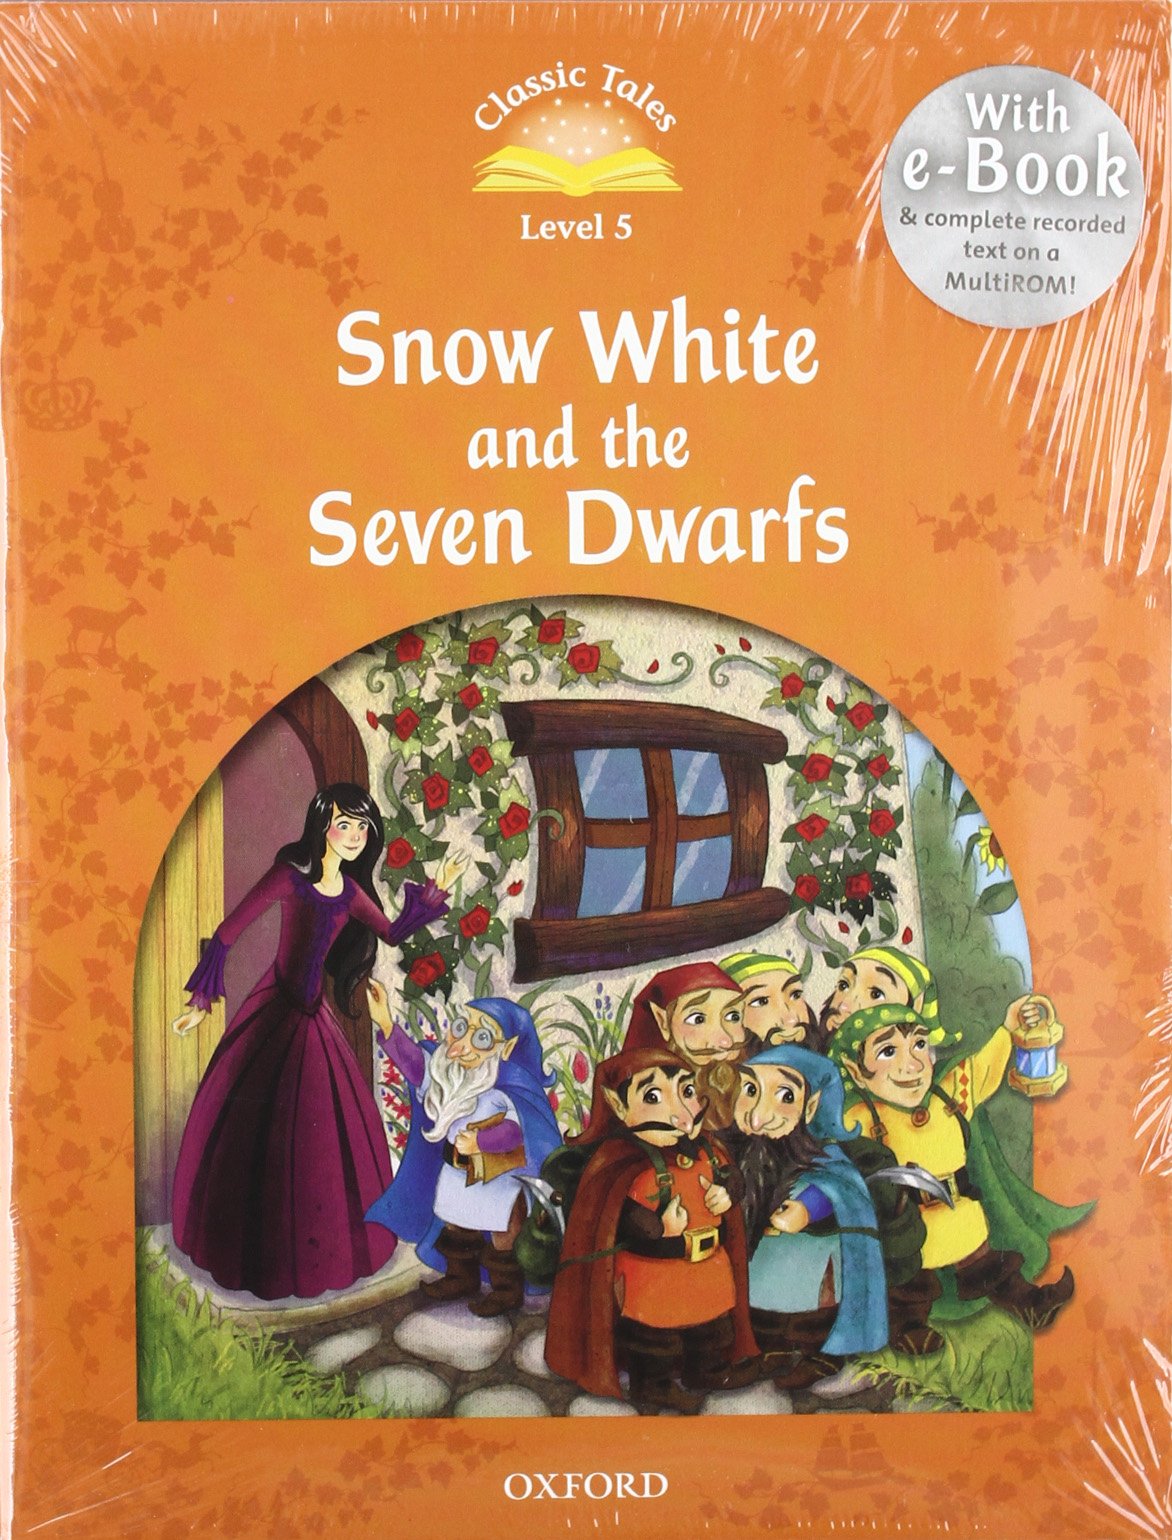 Oxford Classic Tales: Snow White and the Seven Dwarfs e-Book + Audio